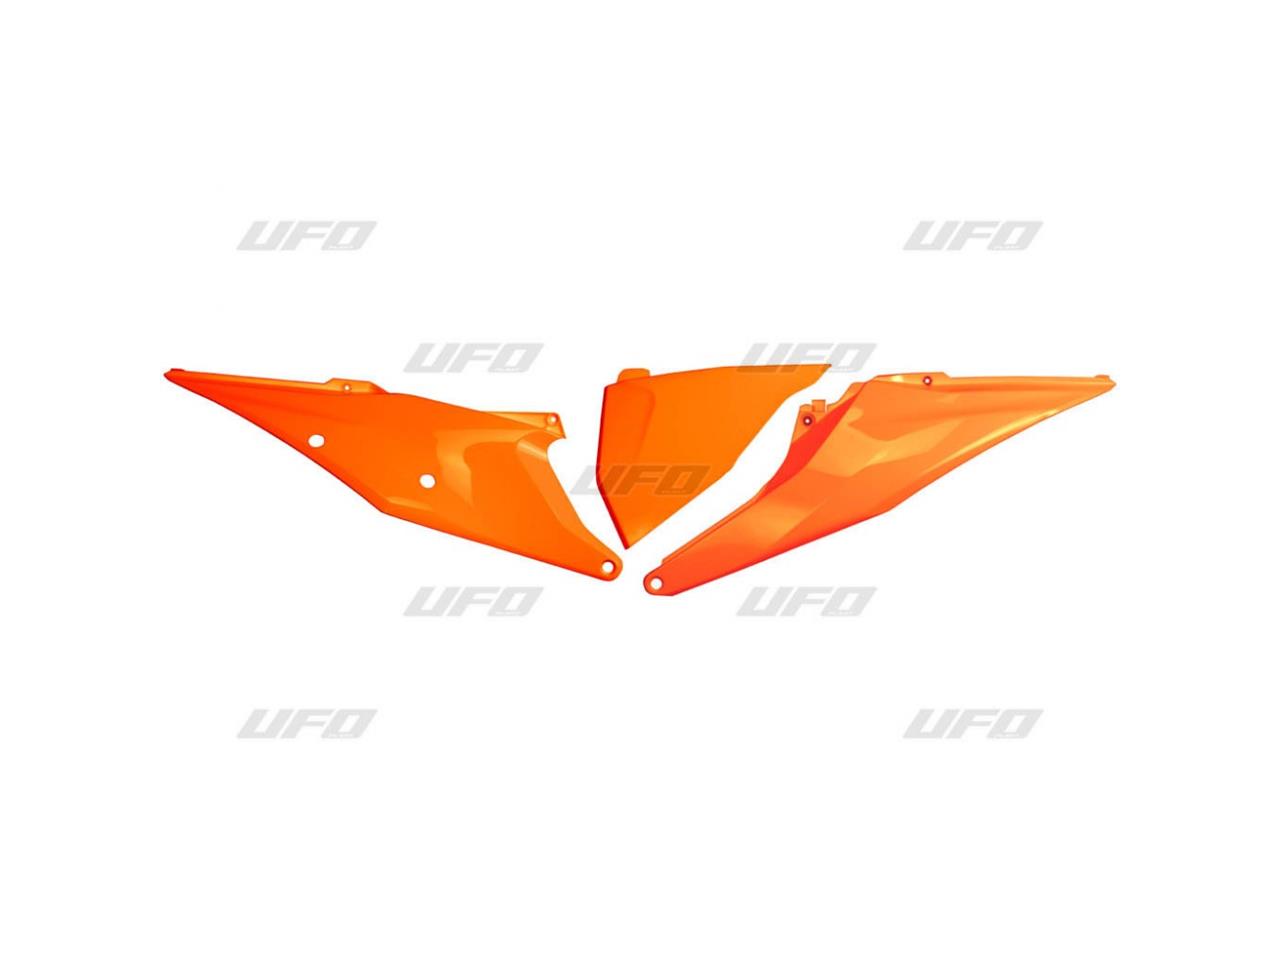 Plaques latérales marque UFO orange